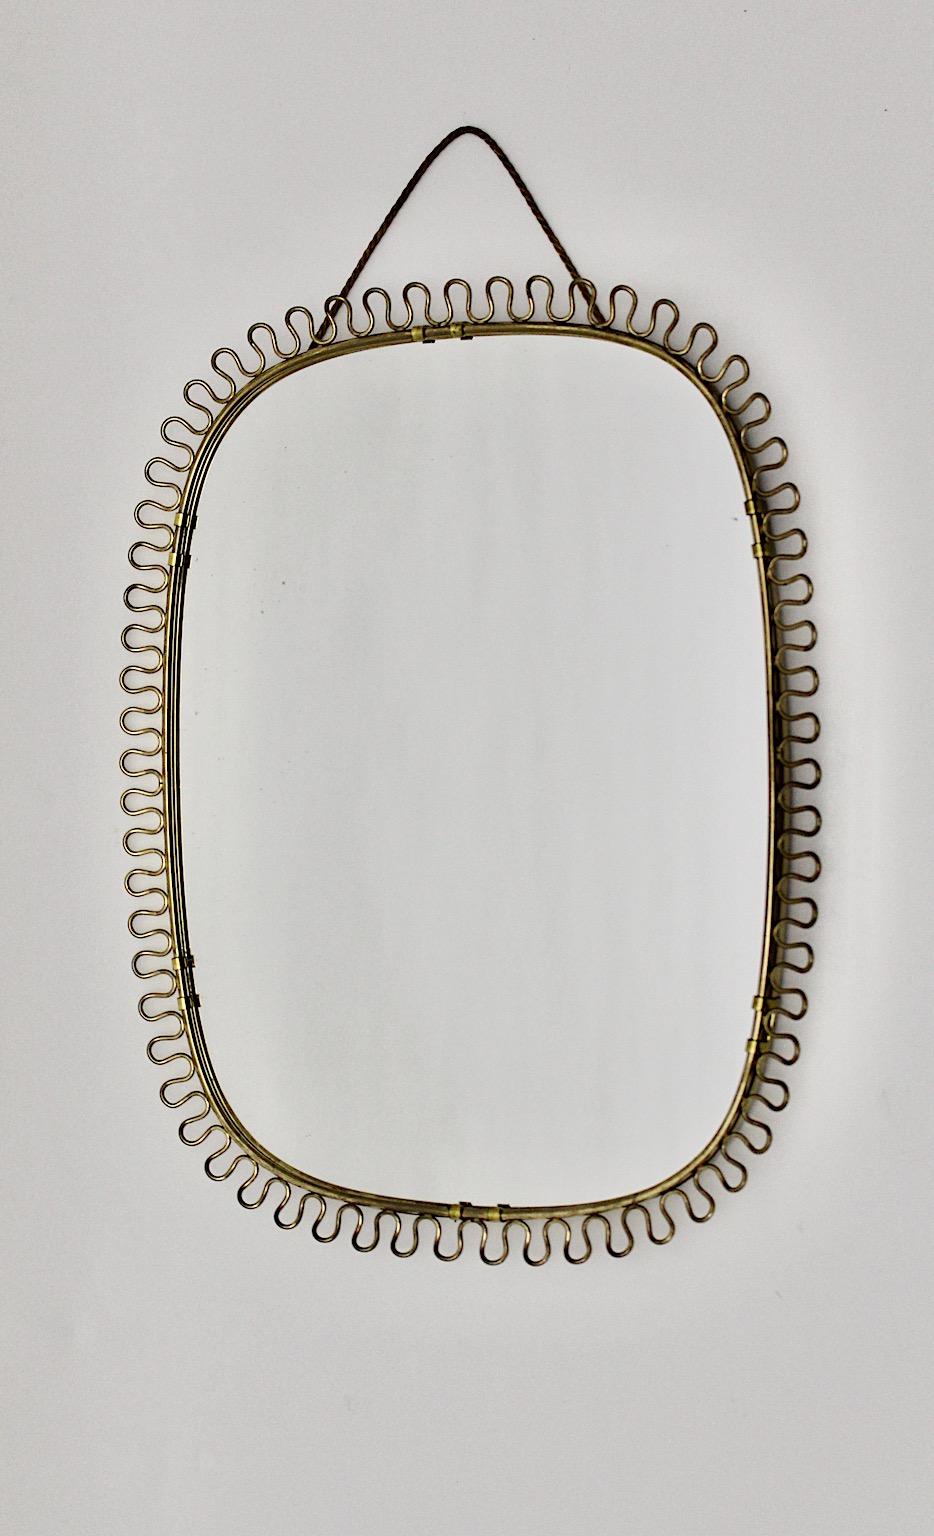 Mid-Century Modern Wand Sonnenschliff Spiegel oval wie von Josef Frank
für Svenskt Tenn 1950er Jahre Schweden.
Ein atemberaubender Wandspiegel mit geschwungenen schönen Loops Rahmen in Messing in seltener ovaler Form gearbeitet.
Dieser